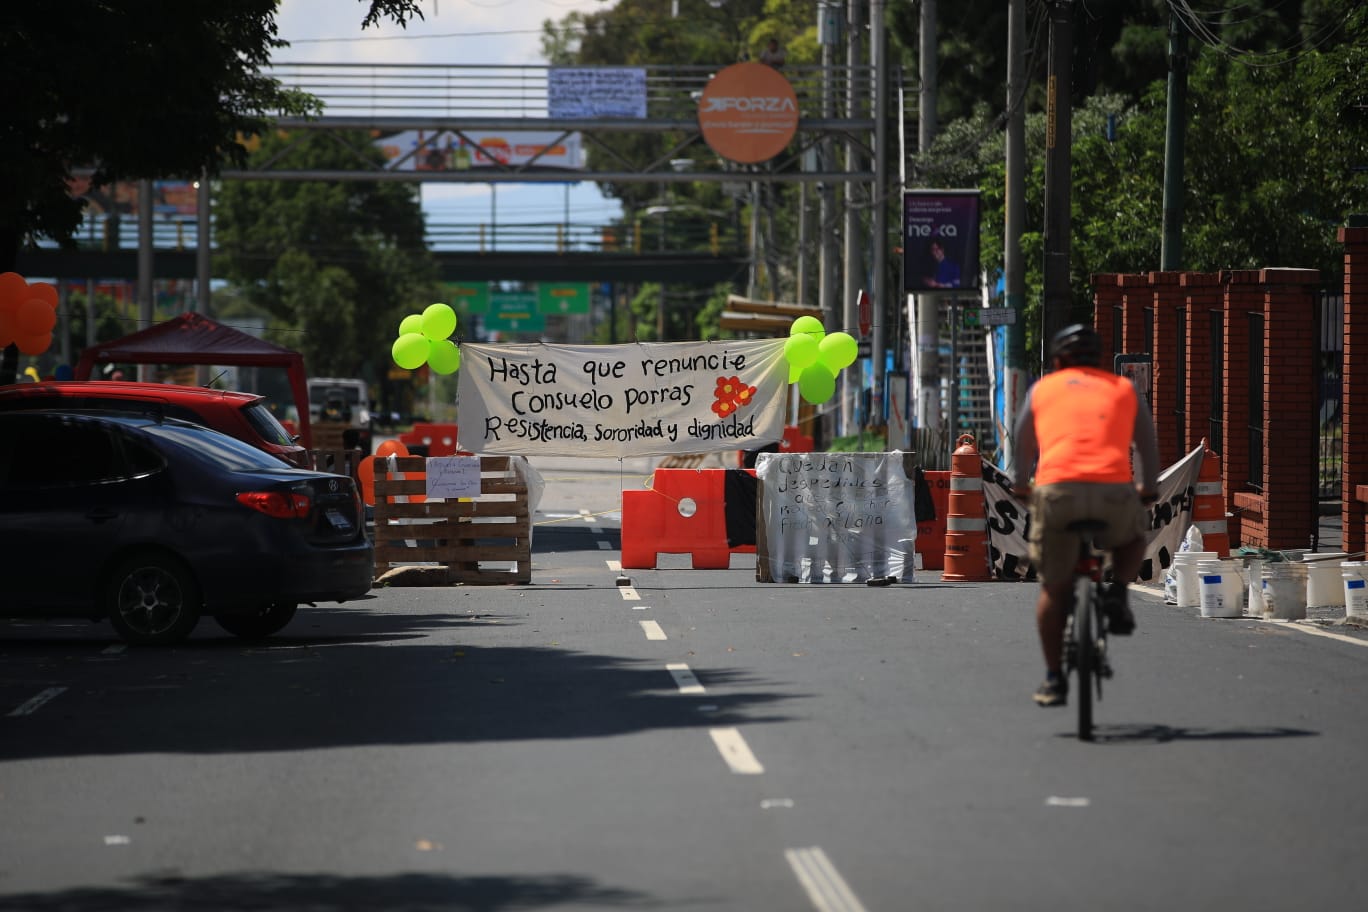 La avenida Petapa ha sido uno de los puntos afectados por los bloqueos durante el fin de semana. (Foto Prensa Libre: Carlos H. Ovalle)